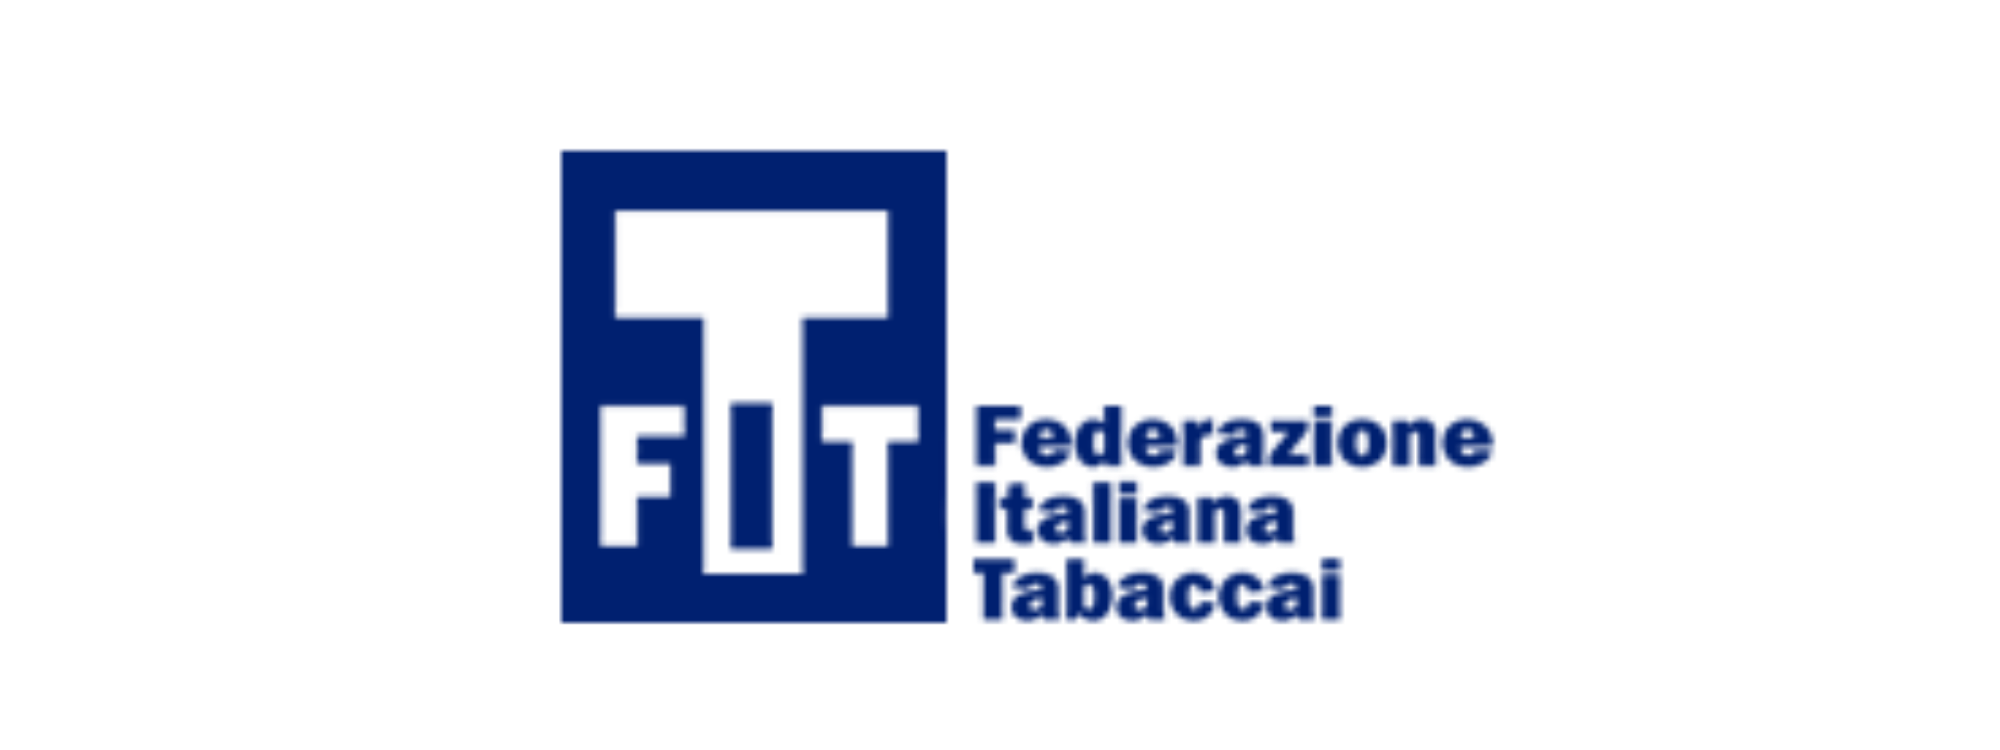 FIT – Federazione Italiana Tabaccai